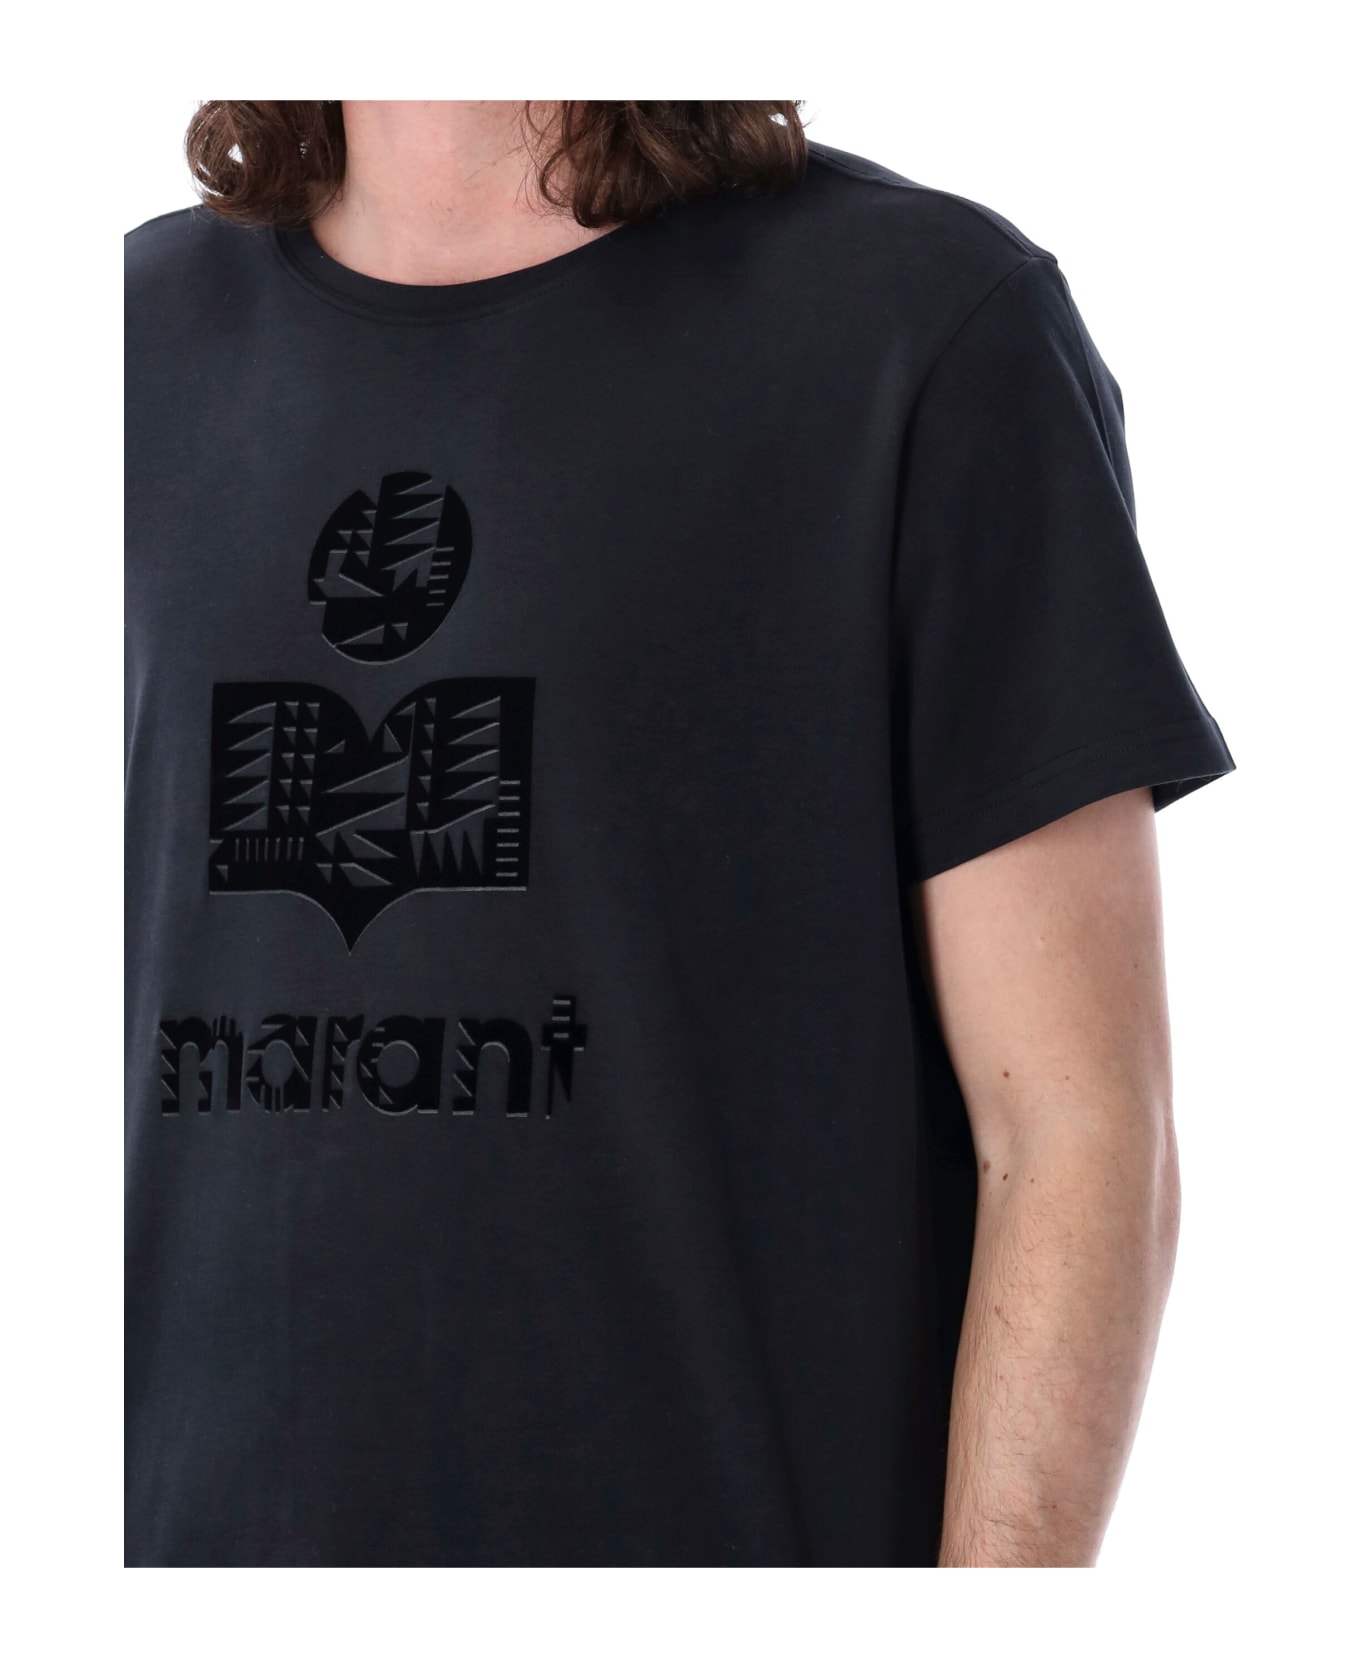 Isabel Marant Zeffreh T-shirt - BLACK